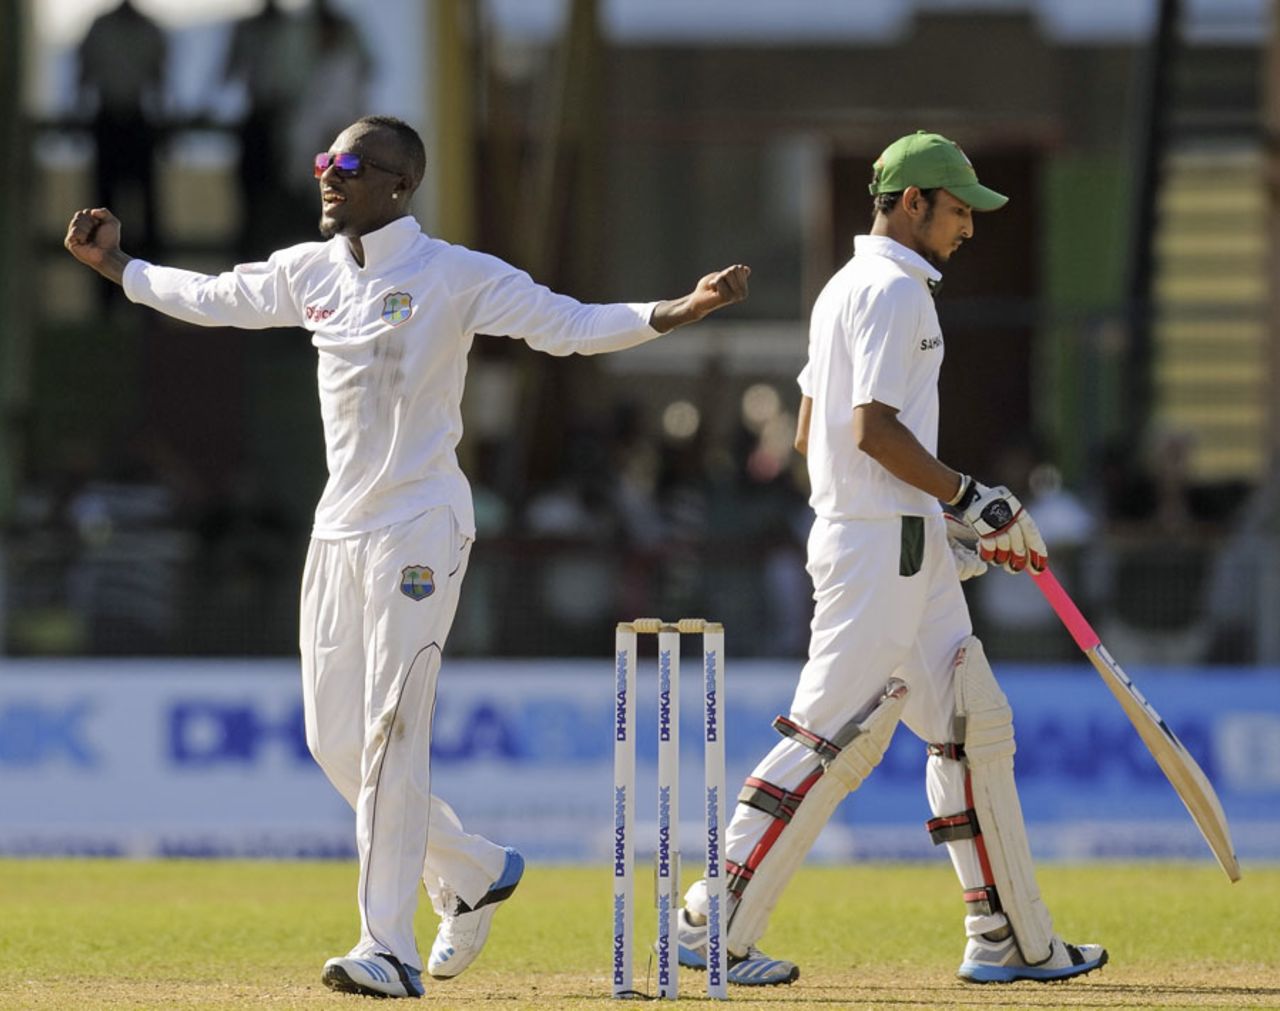 Jermaine Blackwood celebrates after dismissing Nasir Hossain, West Indies v Bangladesh, 1st Test, St Vincent, 3rd day, September 7, 2014